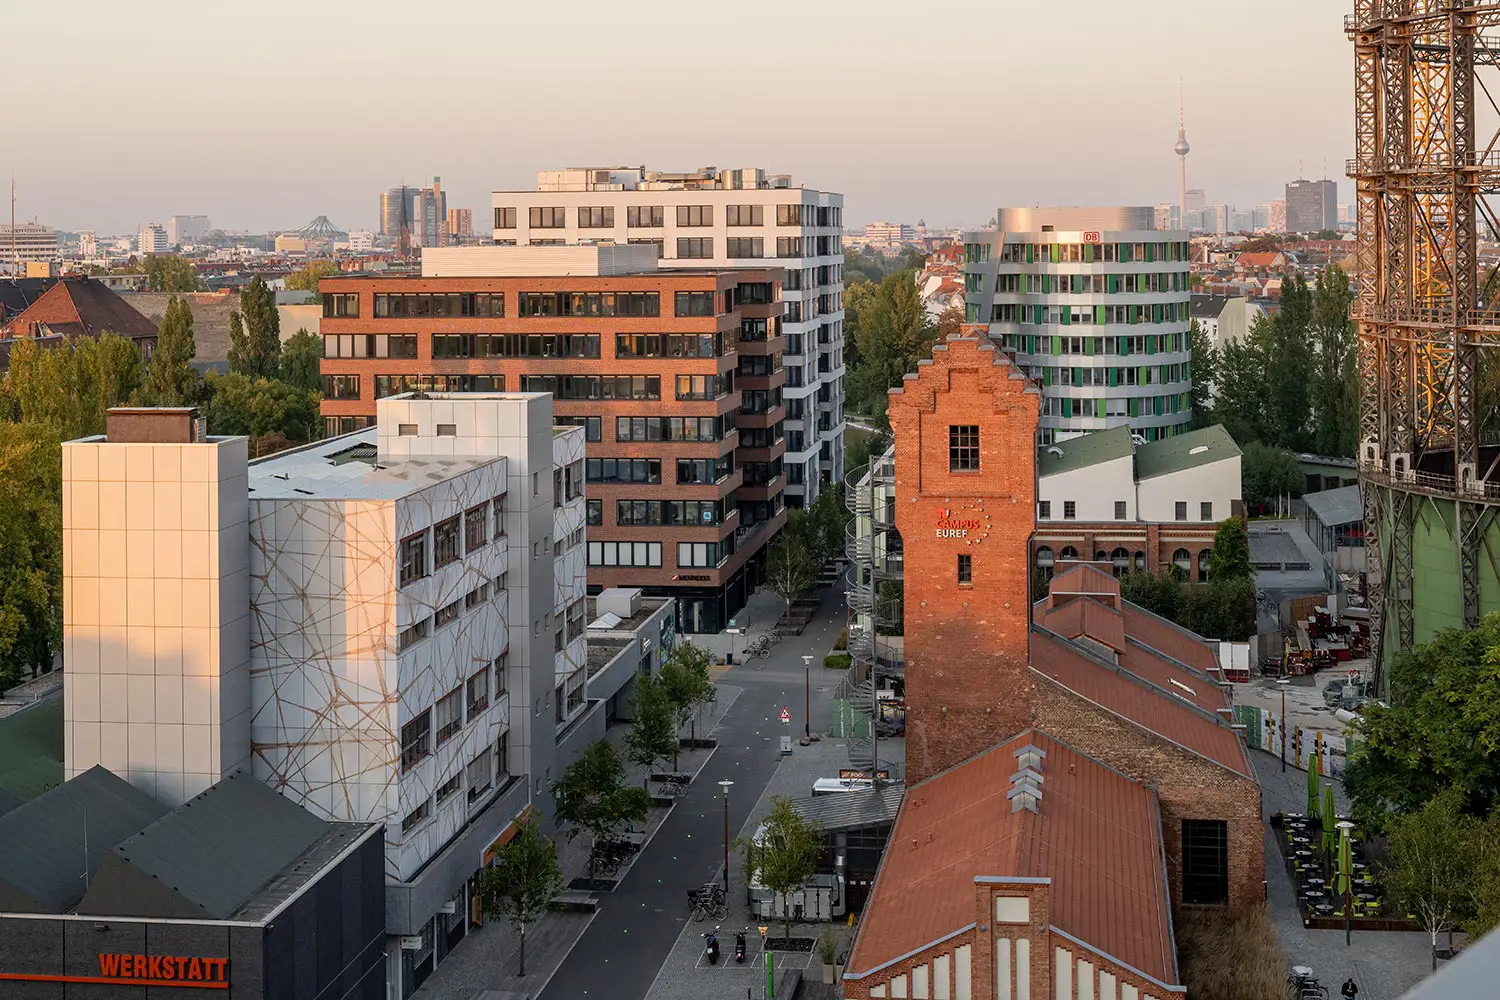 Luftbild mit Blick auf den EUREF-Campus Berlin und das ubitricity-Büro.